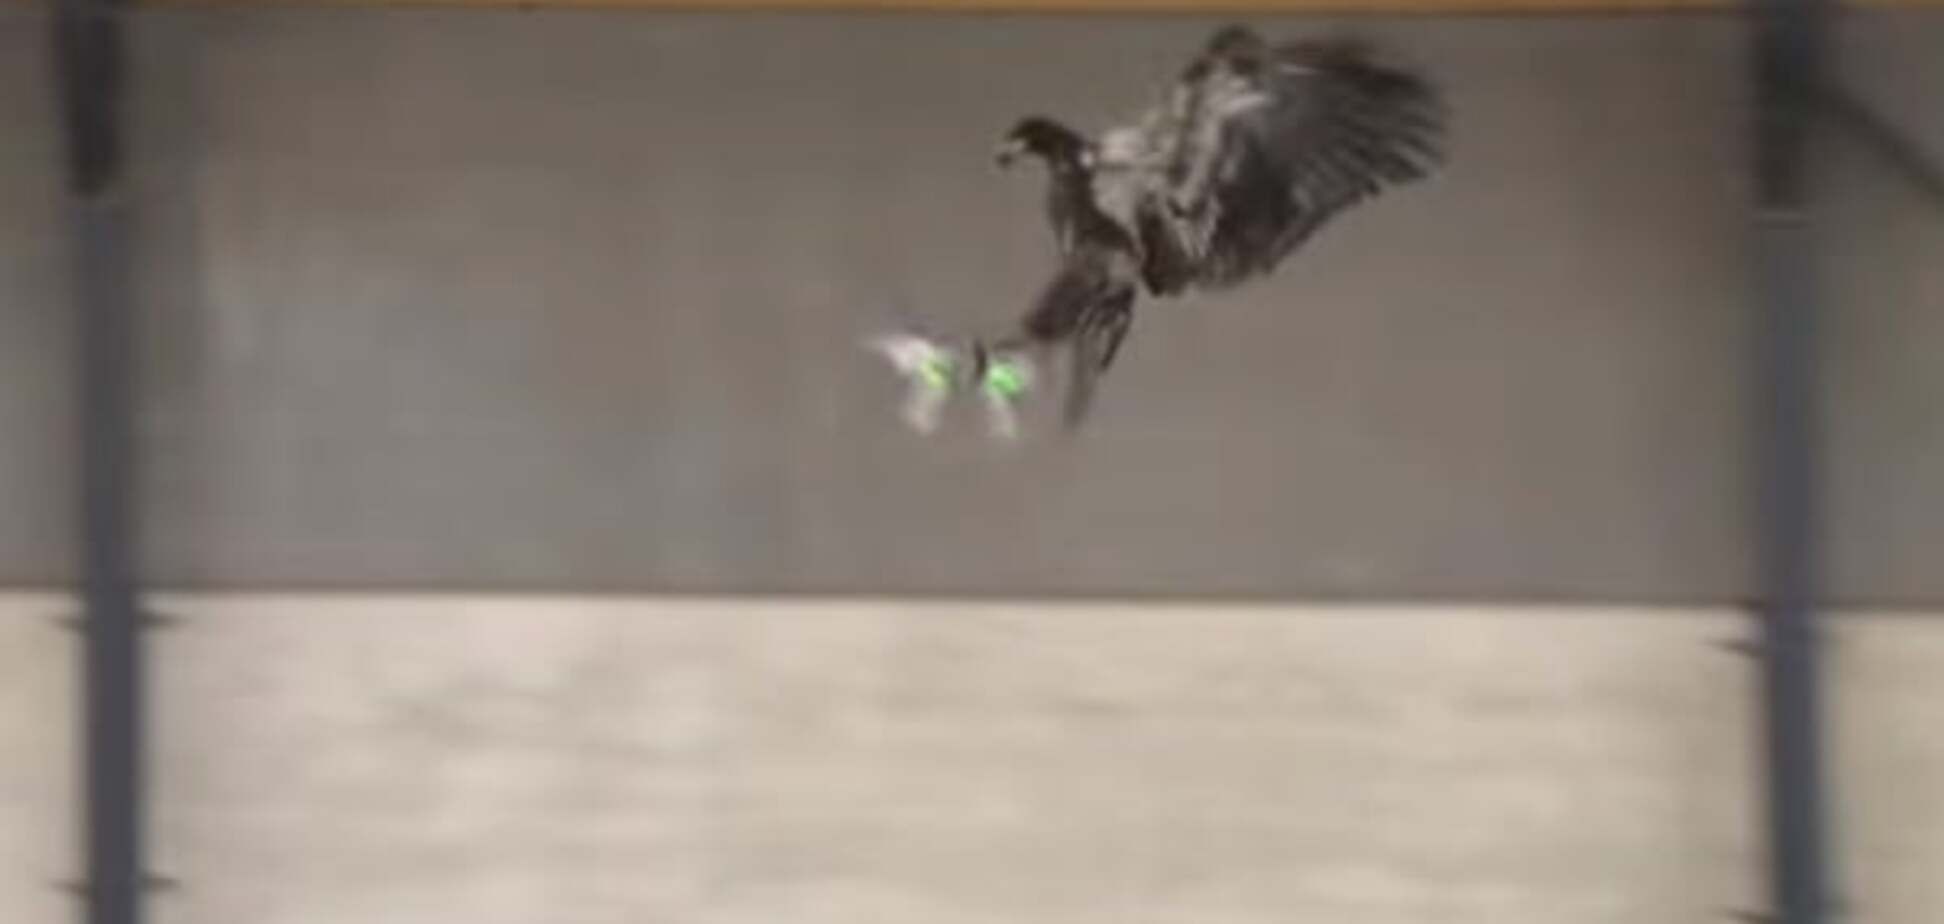 Дронолов: полиция приучила орла ловить дронов. Видеофакт